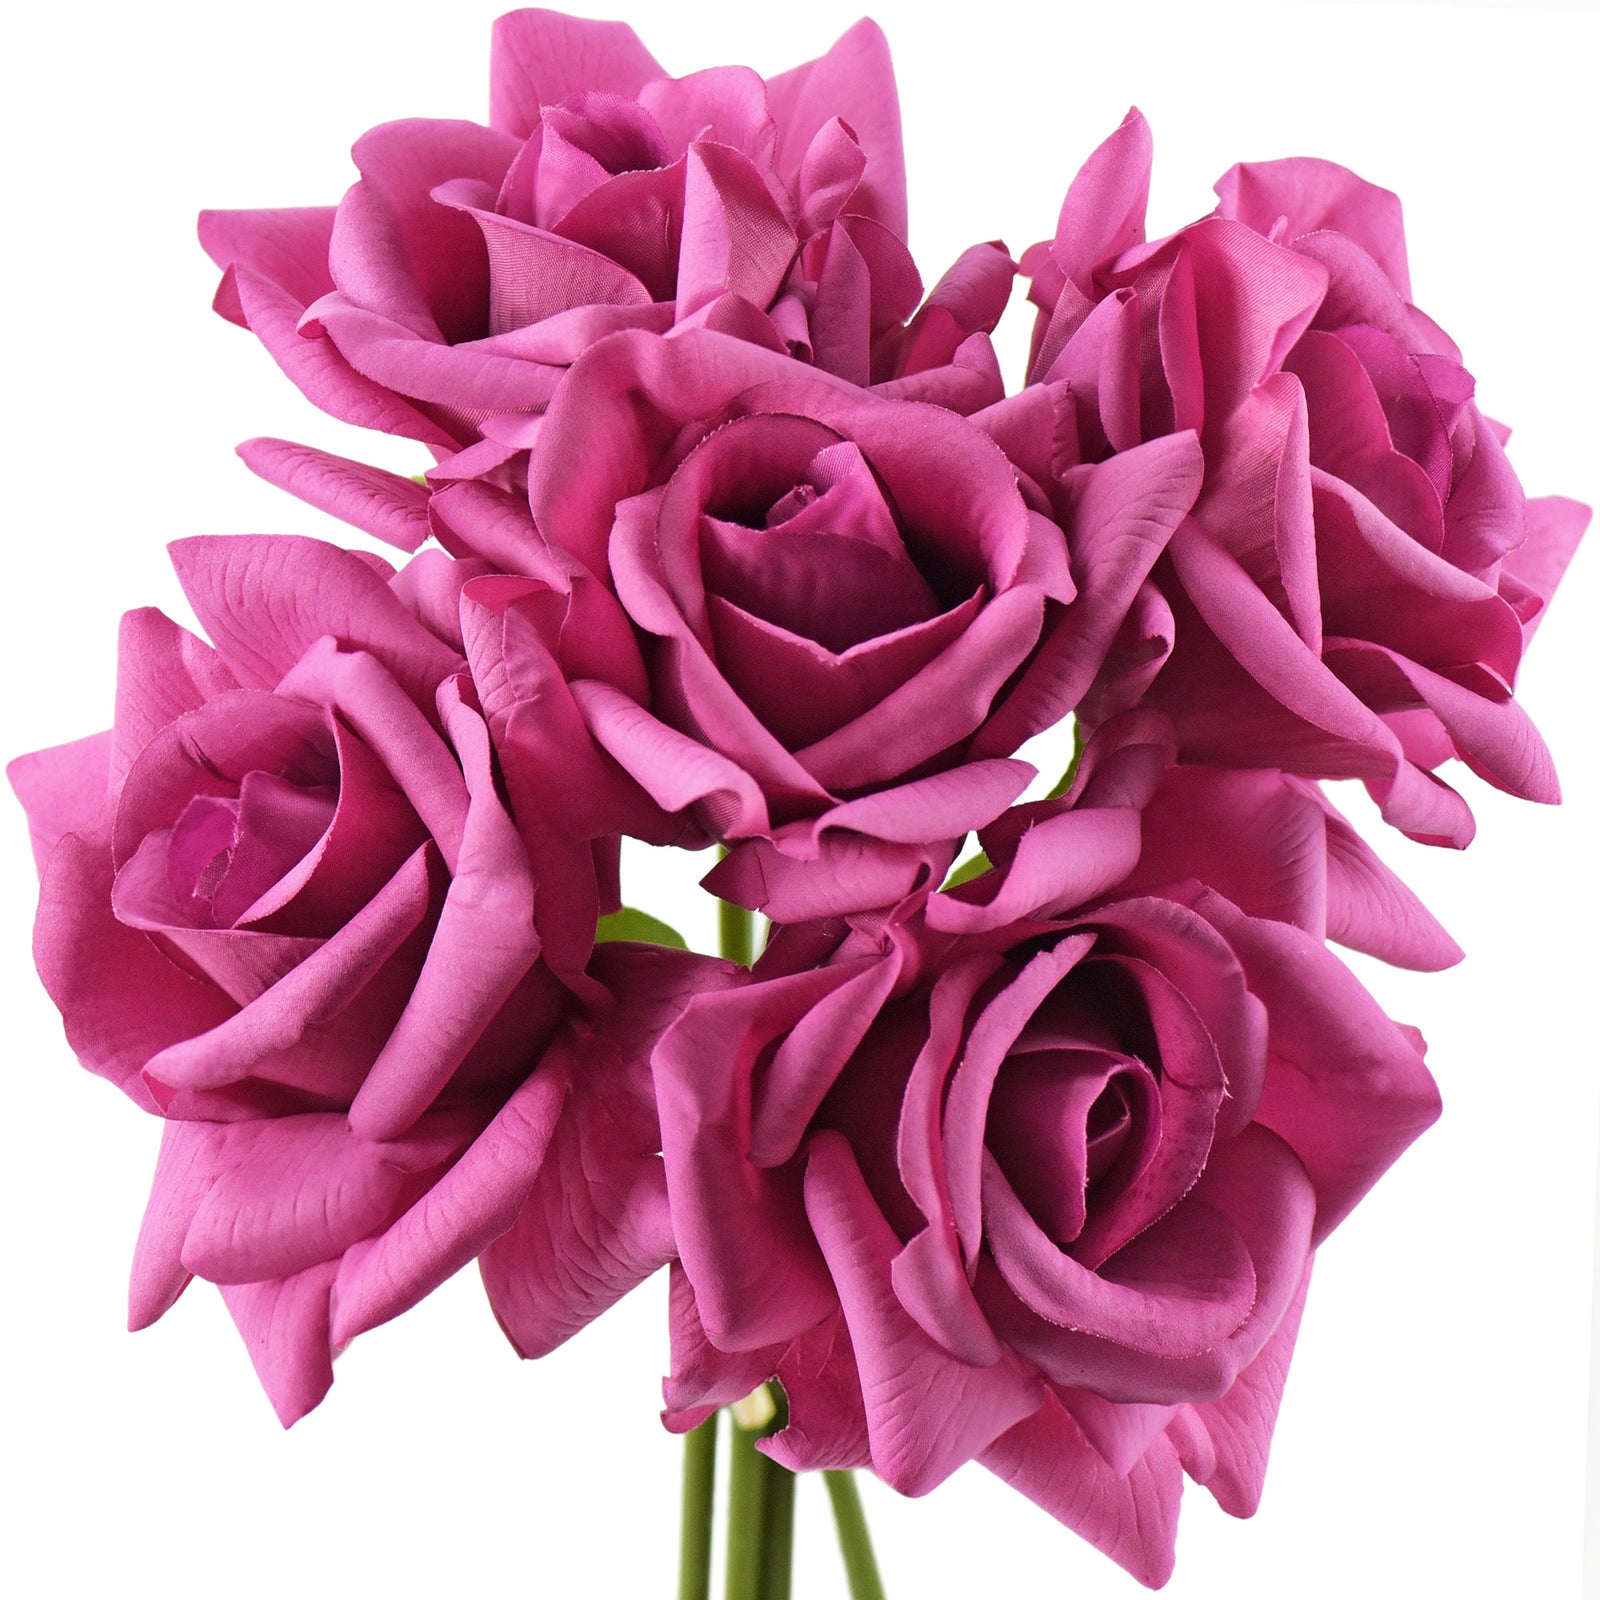 FiveSeasonStuff Raspberry Magenta Real Touch Garden Rose Artificial Flowers Wedding, Bridal, Home Décor 5 Stems 9.8"